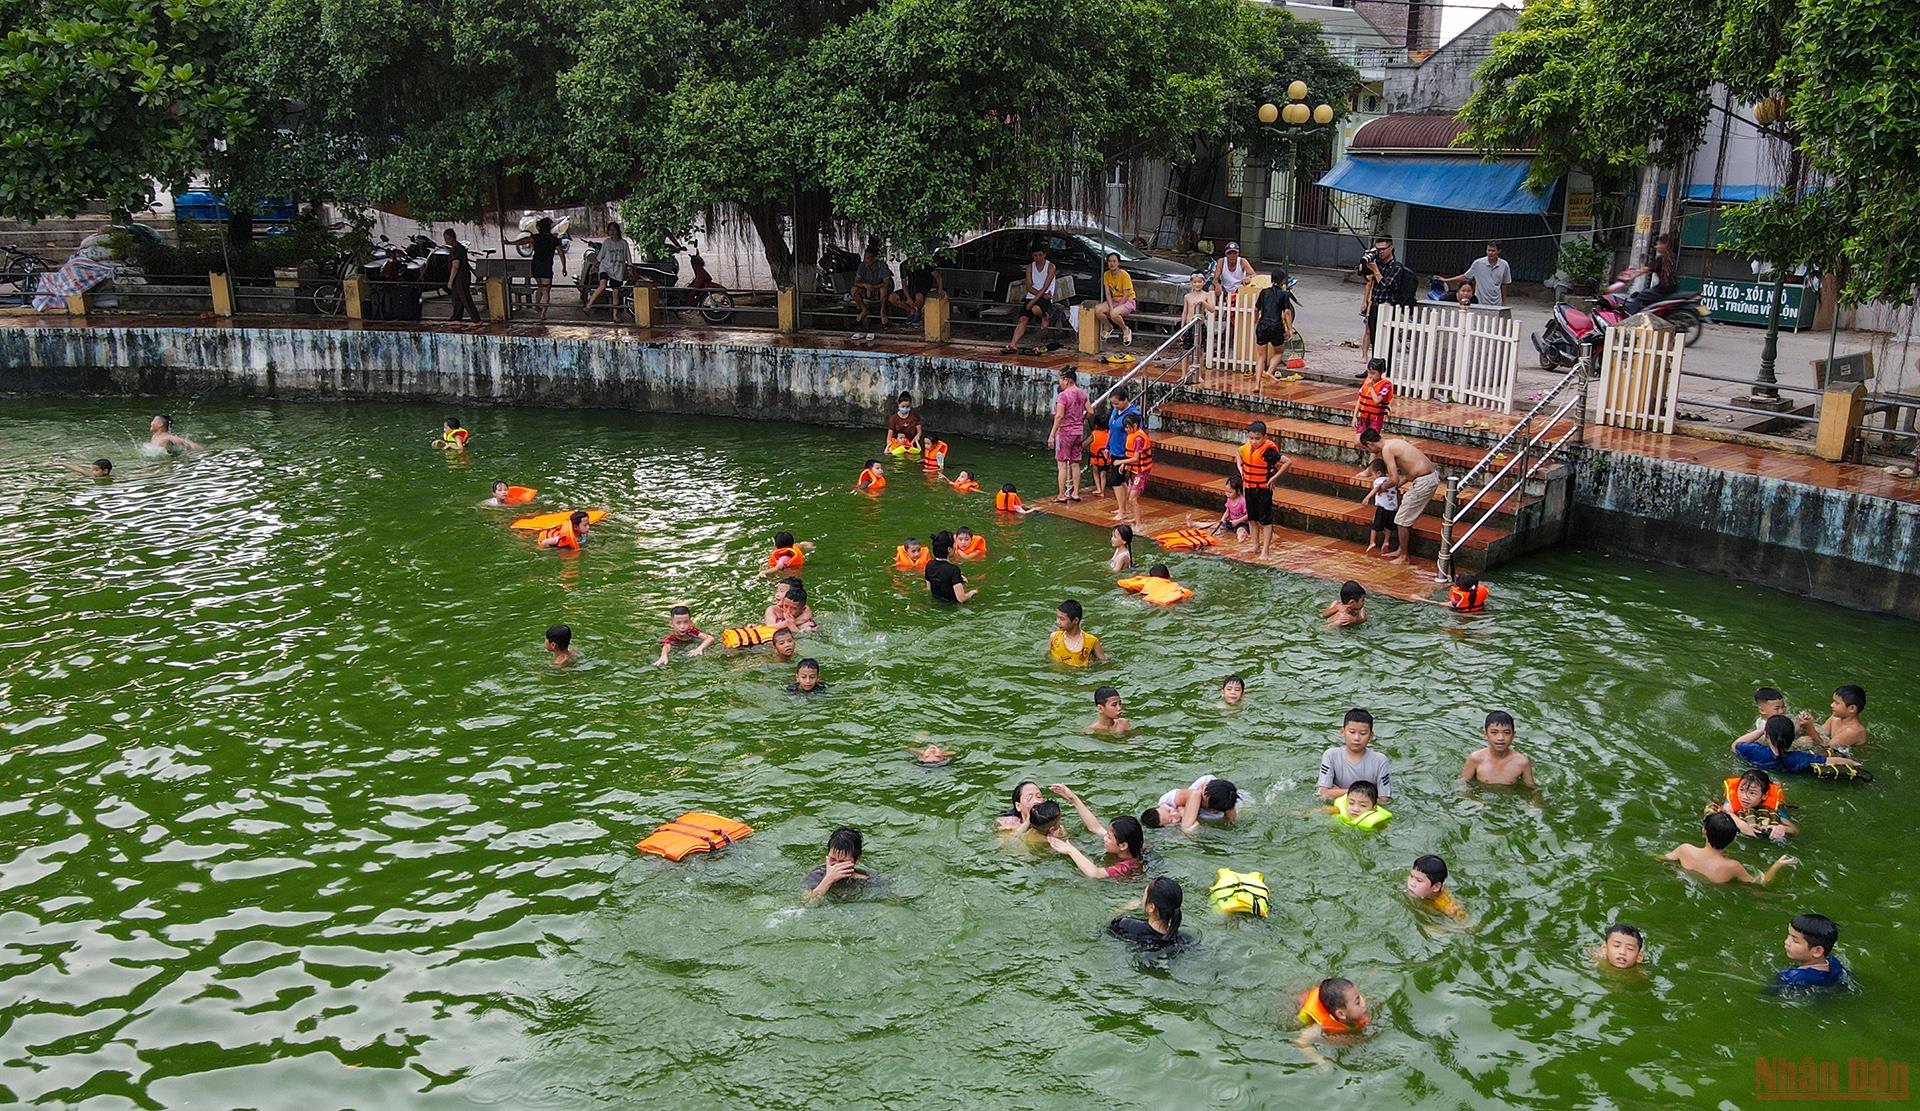 &quot;Biến&quot; ao làng thành bể bơi cực ngầu, cả làng cổ ở ngoại thành Hà Nội cùng huấn luyện các &quot;Yết Kiêu&quot; nhí - Ảnh 3.